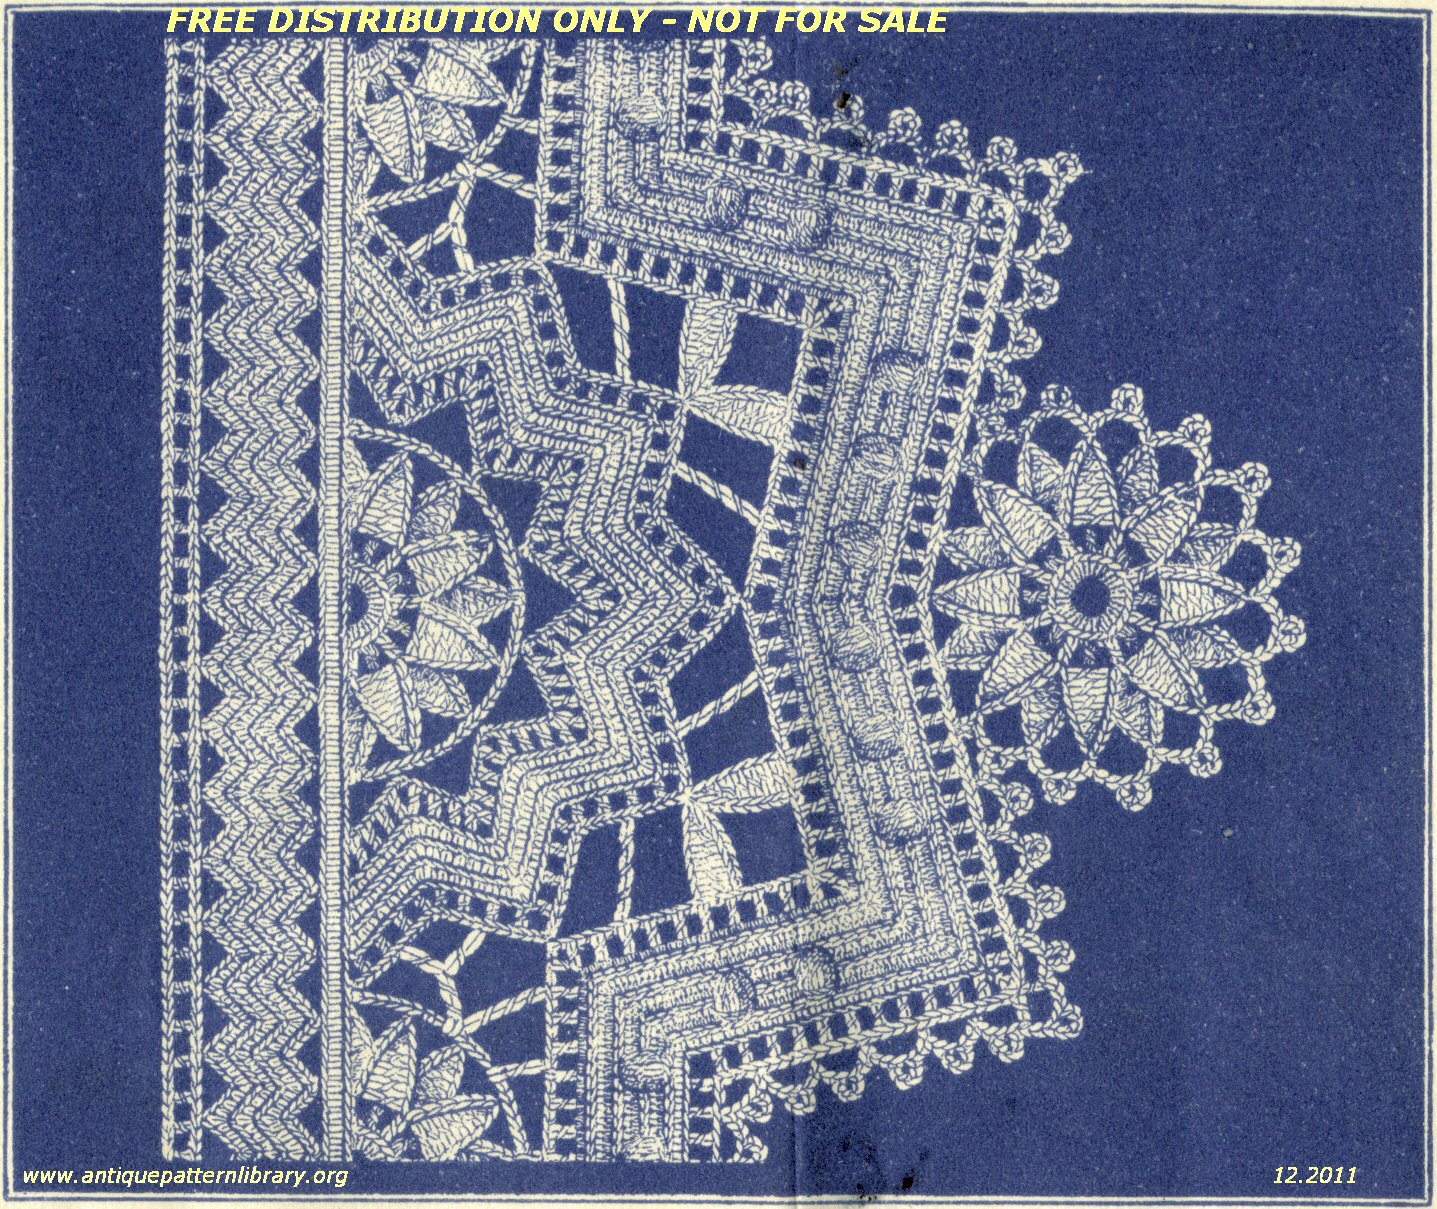 Sheet 2, pattern C